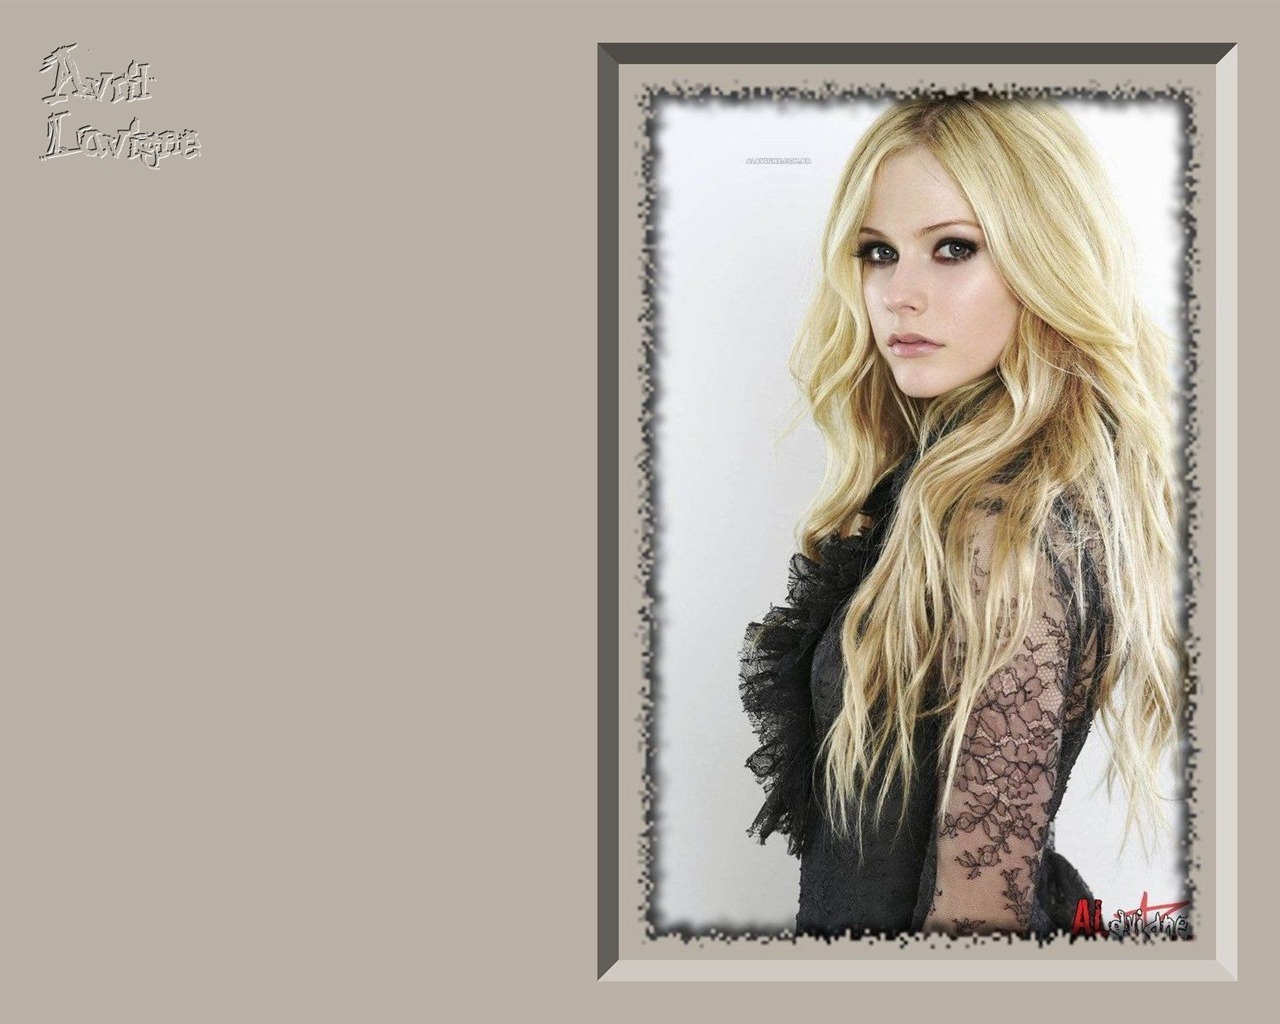 Avril Lavigne 艾薇儿·拉维妮 美女壁纸5 - 1280x1024